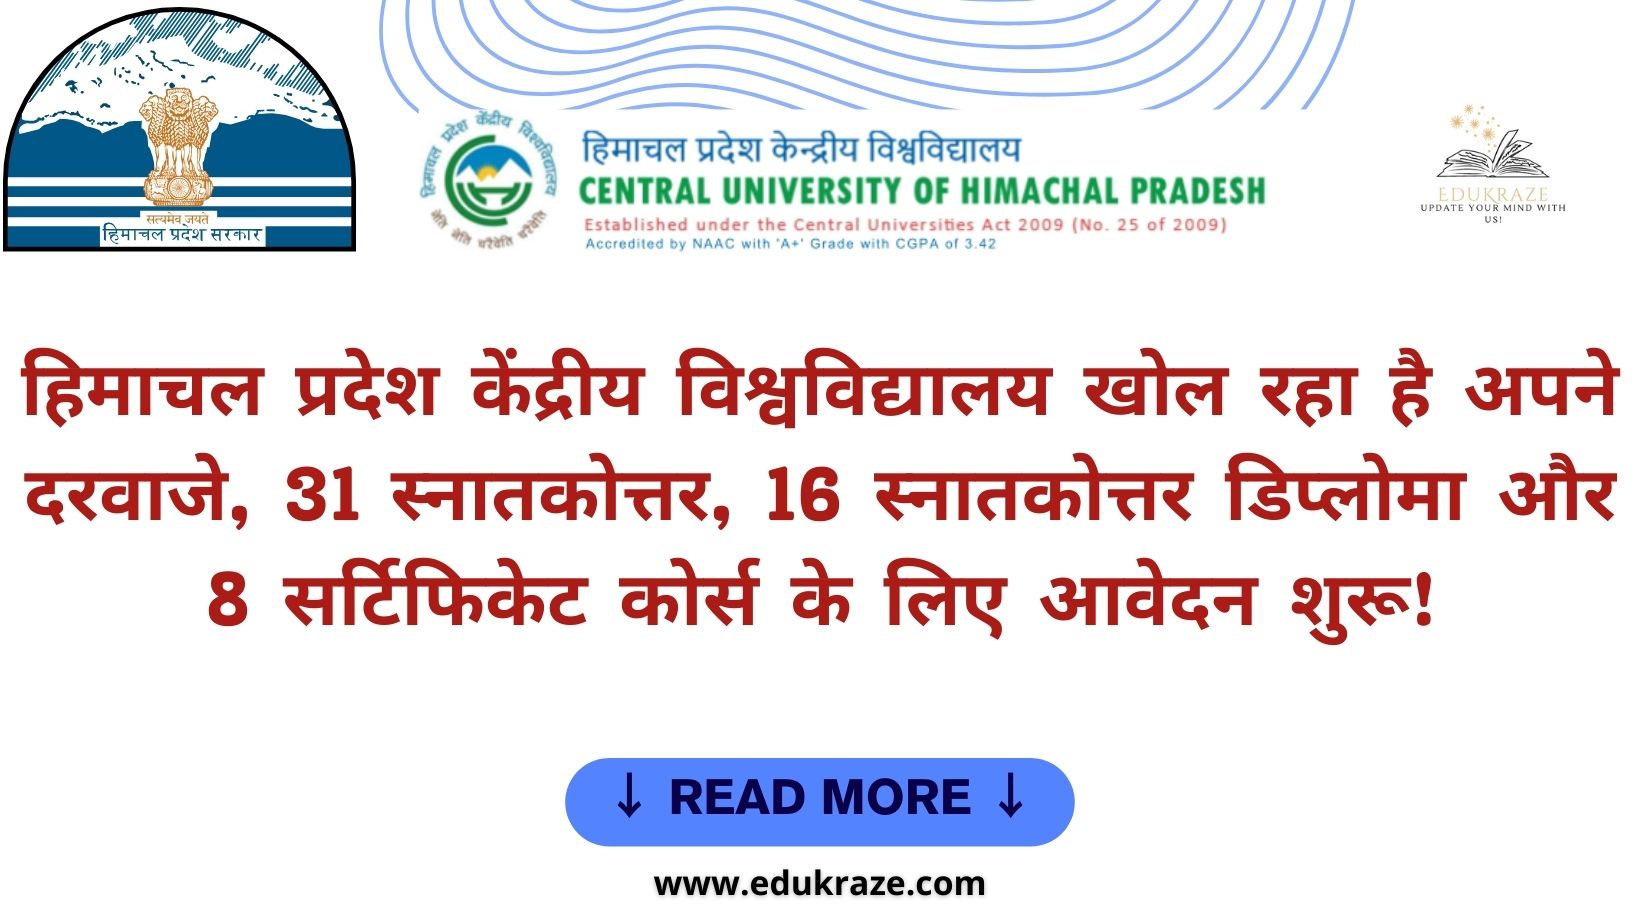 हिमाचल प्रदेश केंद्रीय विश्वविद्यालय में PG, PG डिप्लोमा और सर्टिफिकेट कोर्स के लिए आवेदन शुरू: 24 जनवरी है आखिरी तारीख